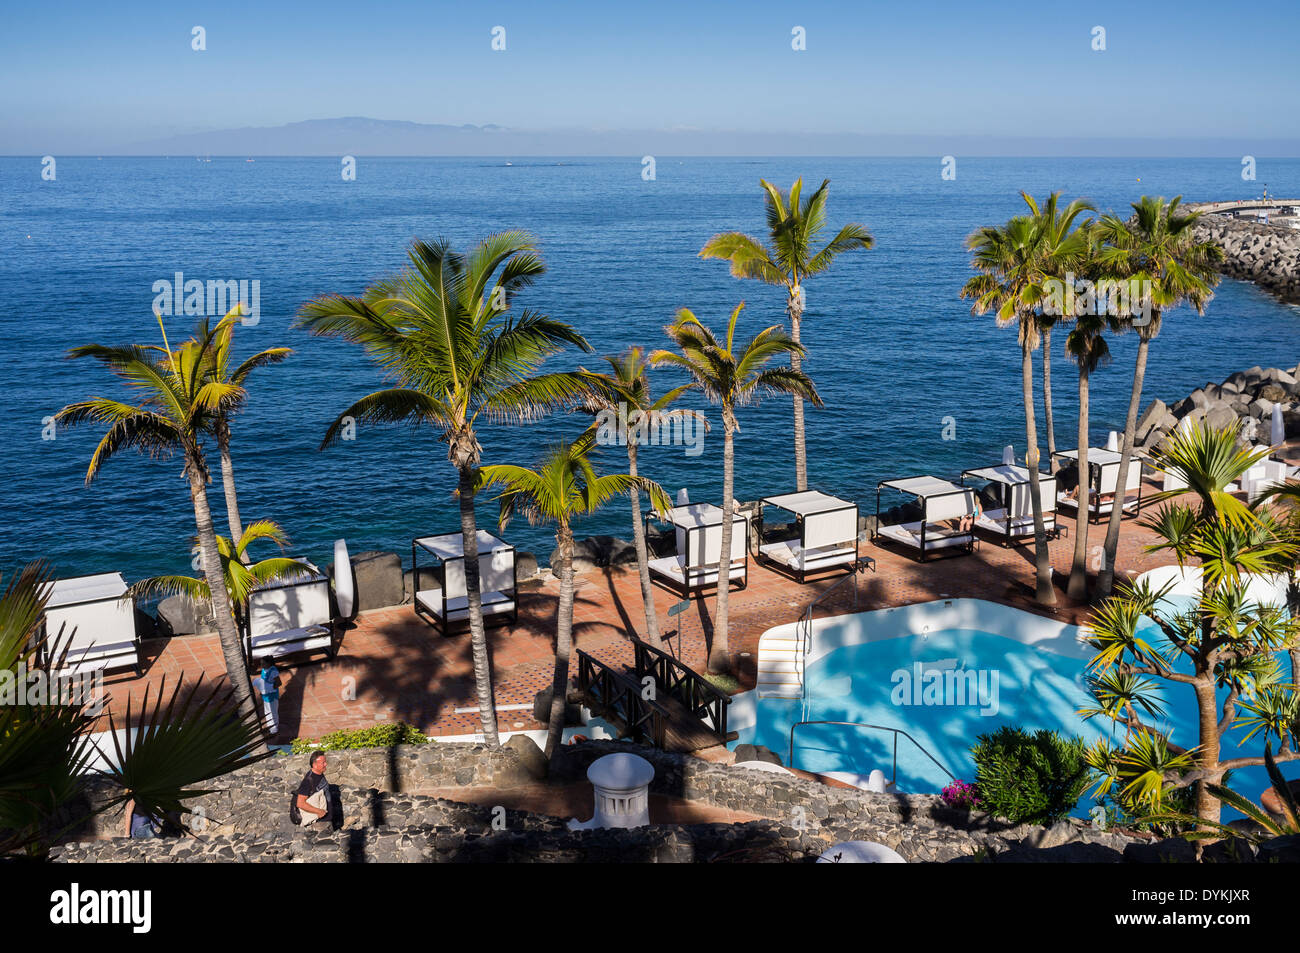 Zona de solarium y piscina frente al mar en el Palms Hotel Jardin Tropical  de Las Américas, Tenerife, Islas Canarias, España Fotografía de stock -  Alamy